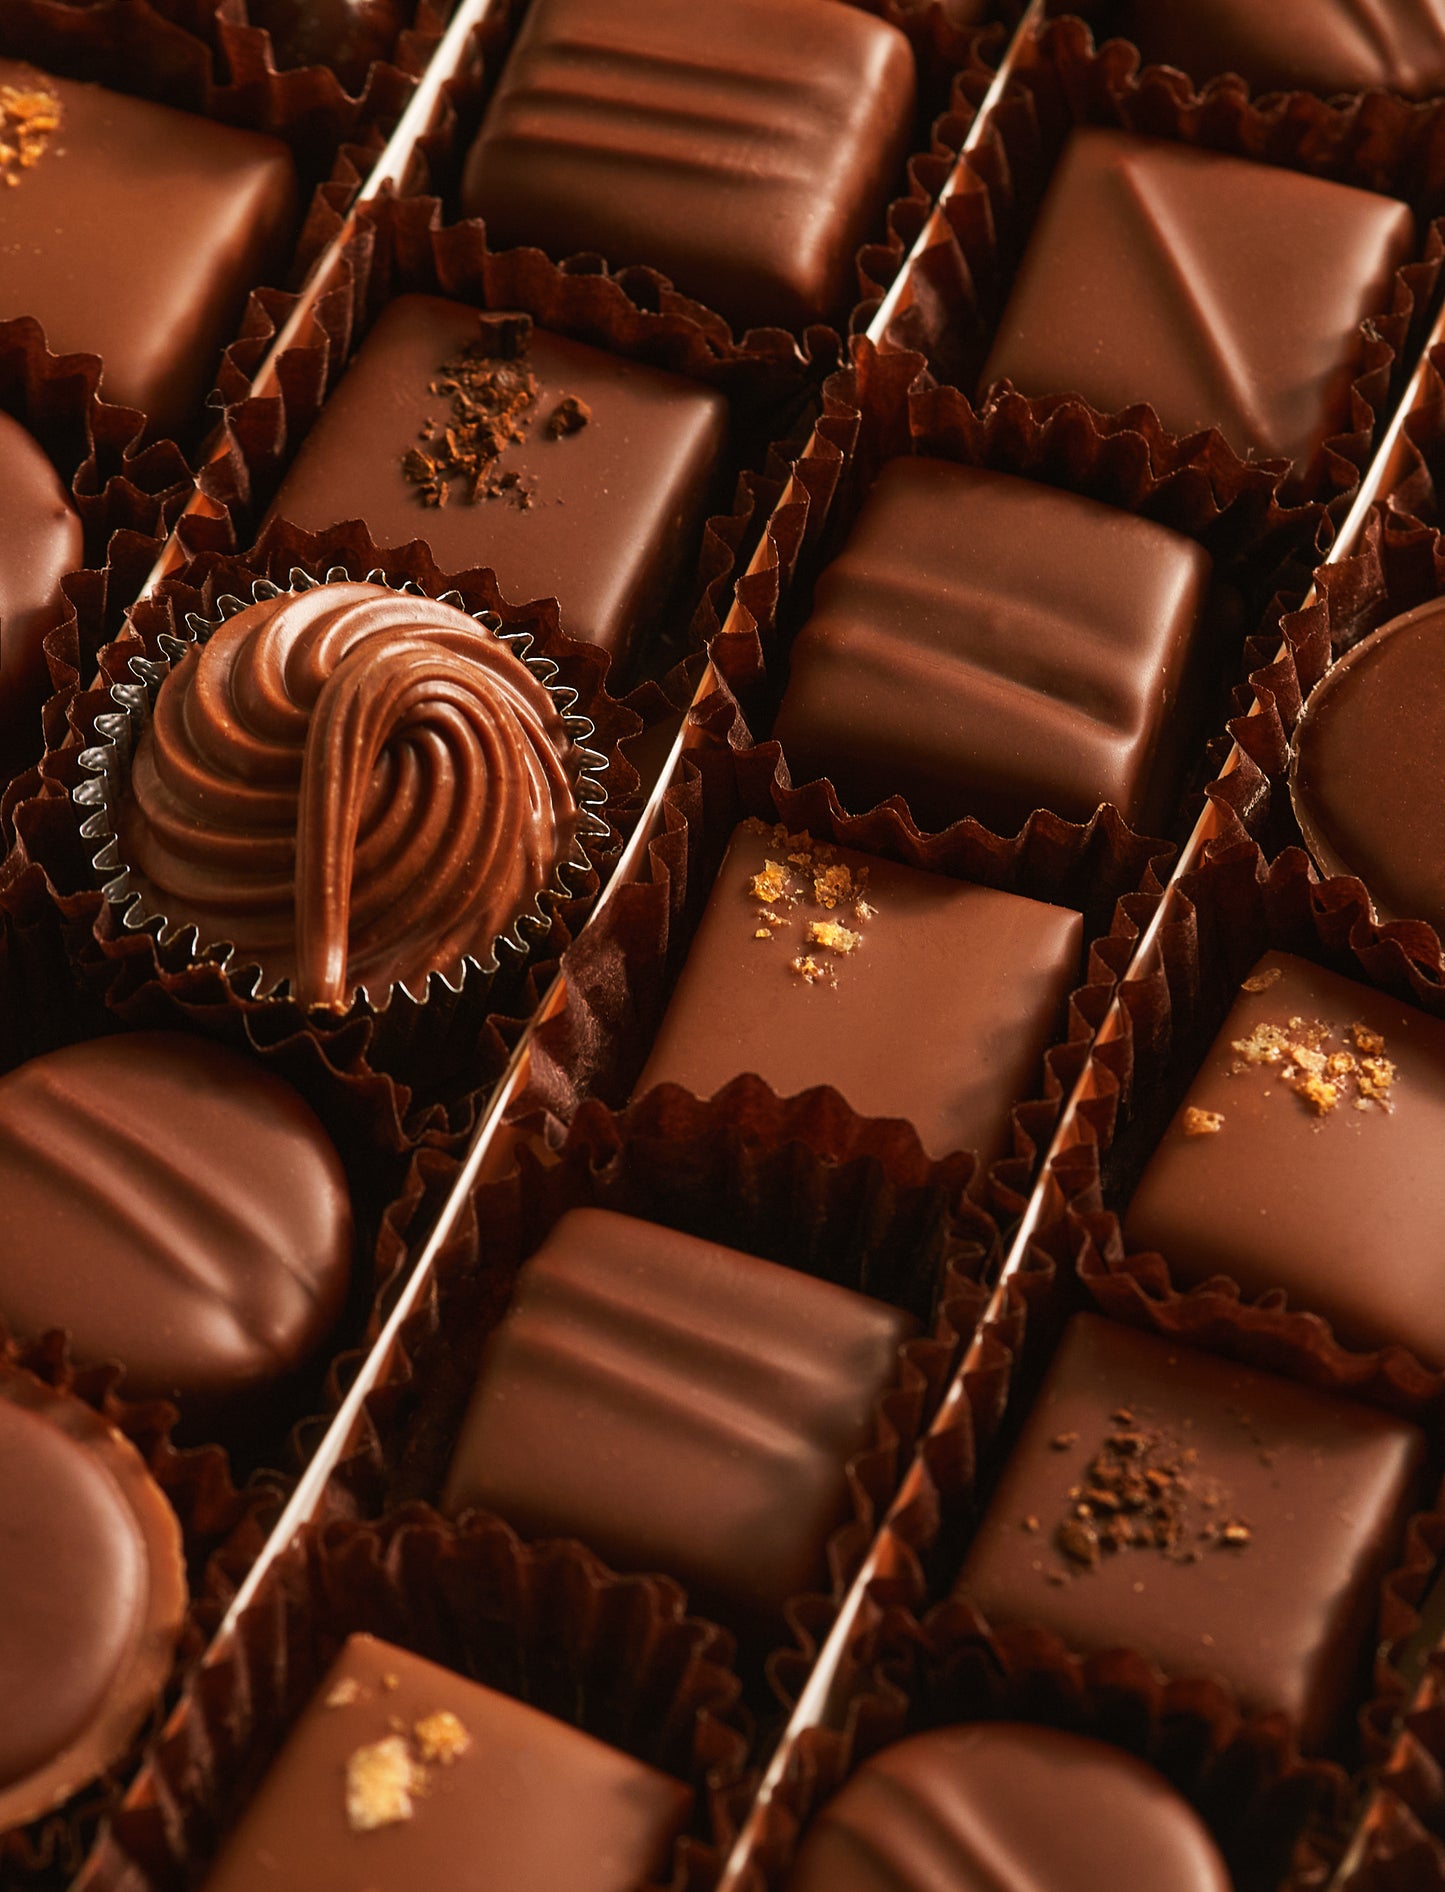 Les chocolats au Lait (54 chocolats)